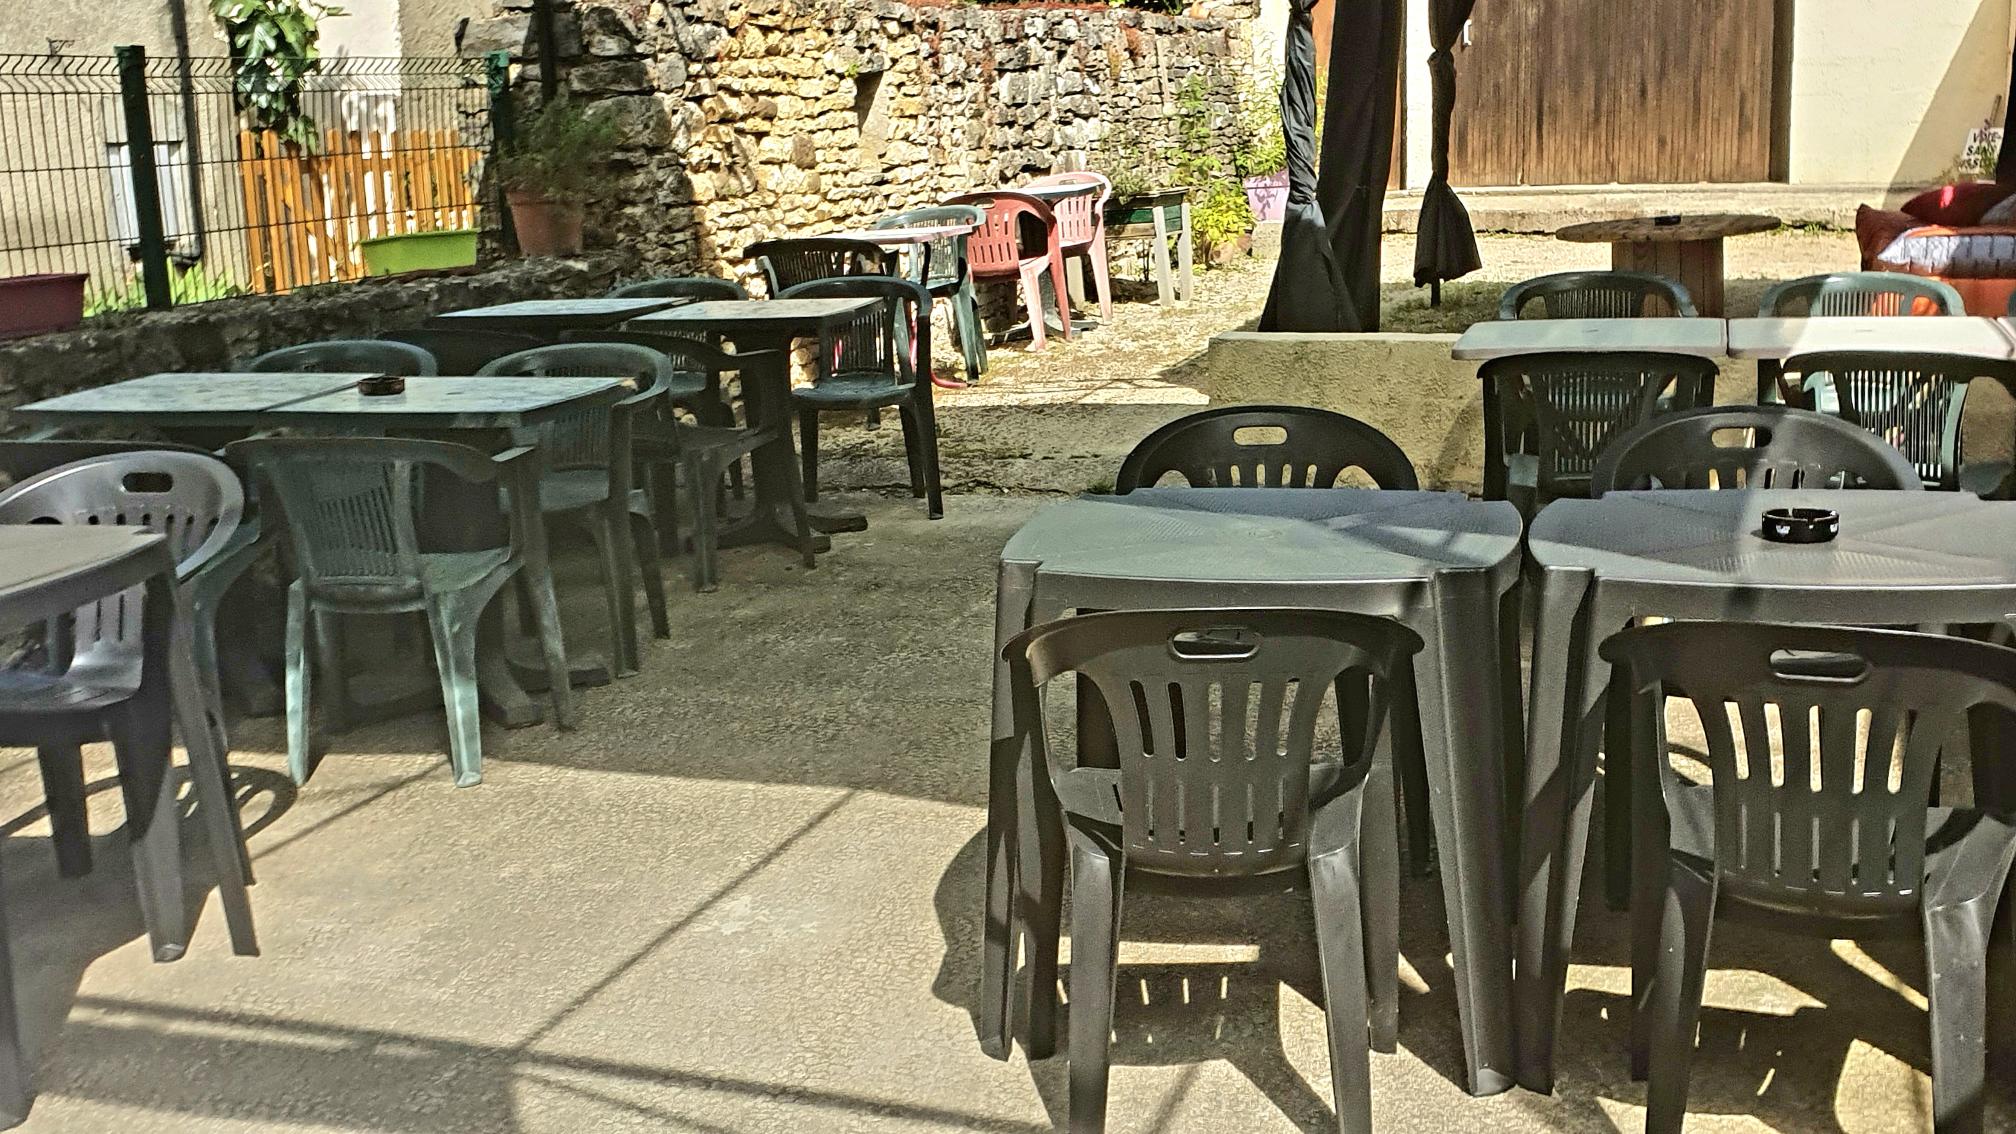 Vend Bar - Restaurant  dans un village proche de Vézelay.

Comprend:

- salle de restaurant environ 20 couverts
- terrasse pouvant accueillir des concerts ou événements, environ 40 couverts
- salle de bar, un billard est sur place.
-chauffage au bois
- cuisine refaite moins de 3 ans
- le loyer est a négocier

-le fond est à 40 000€.